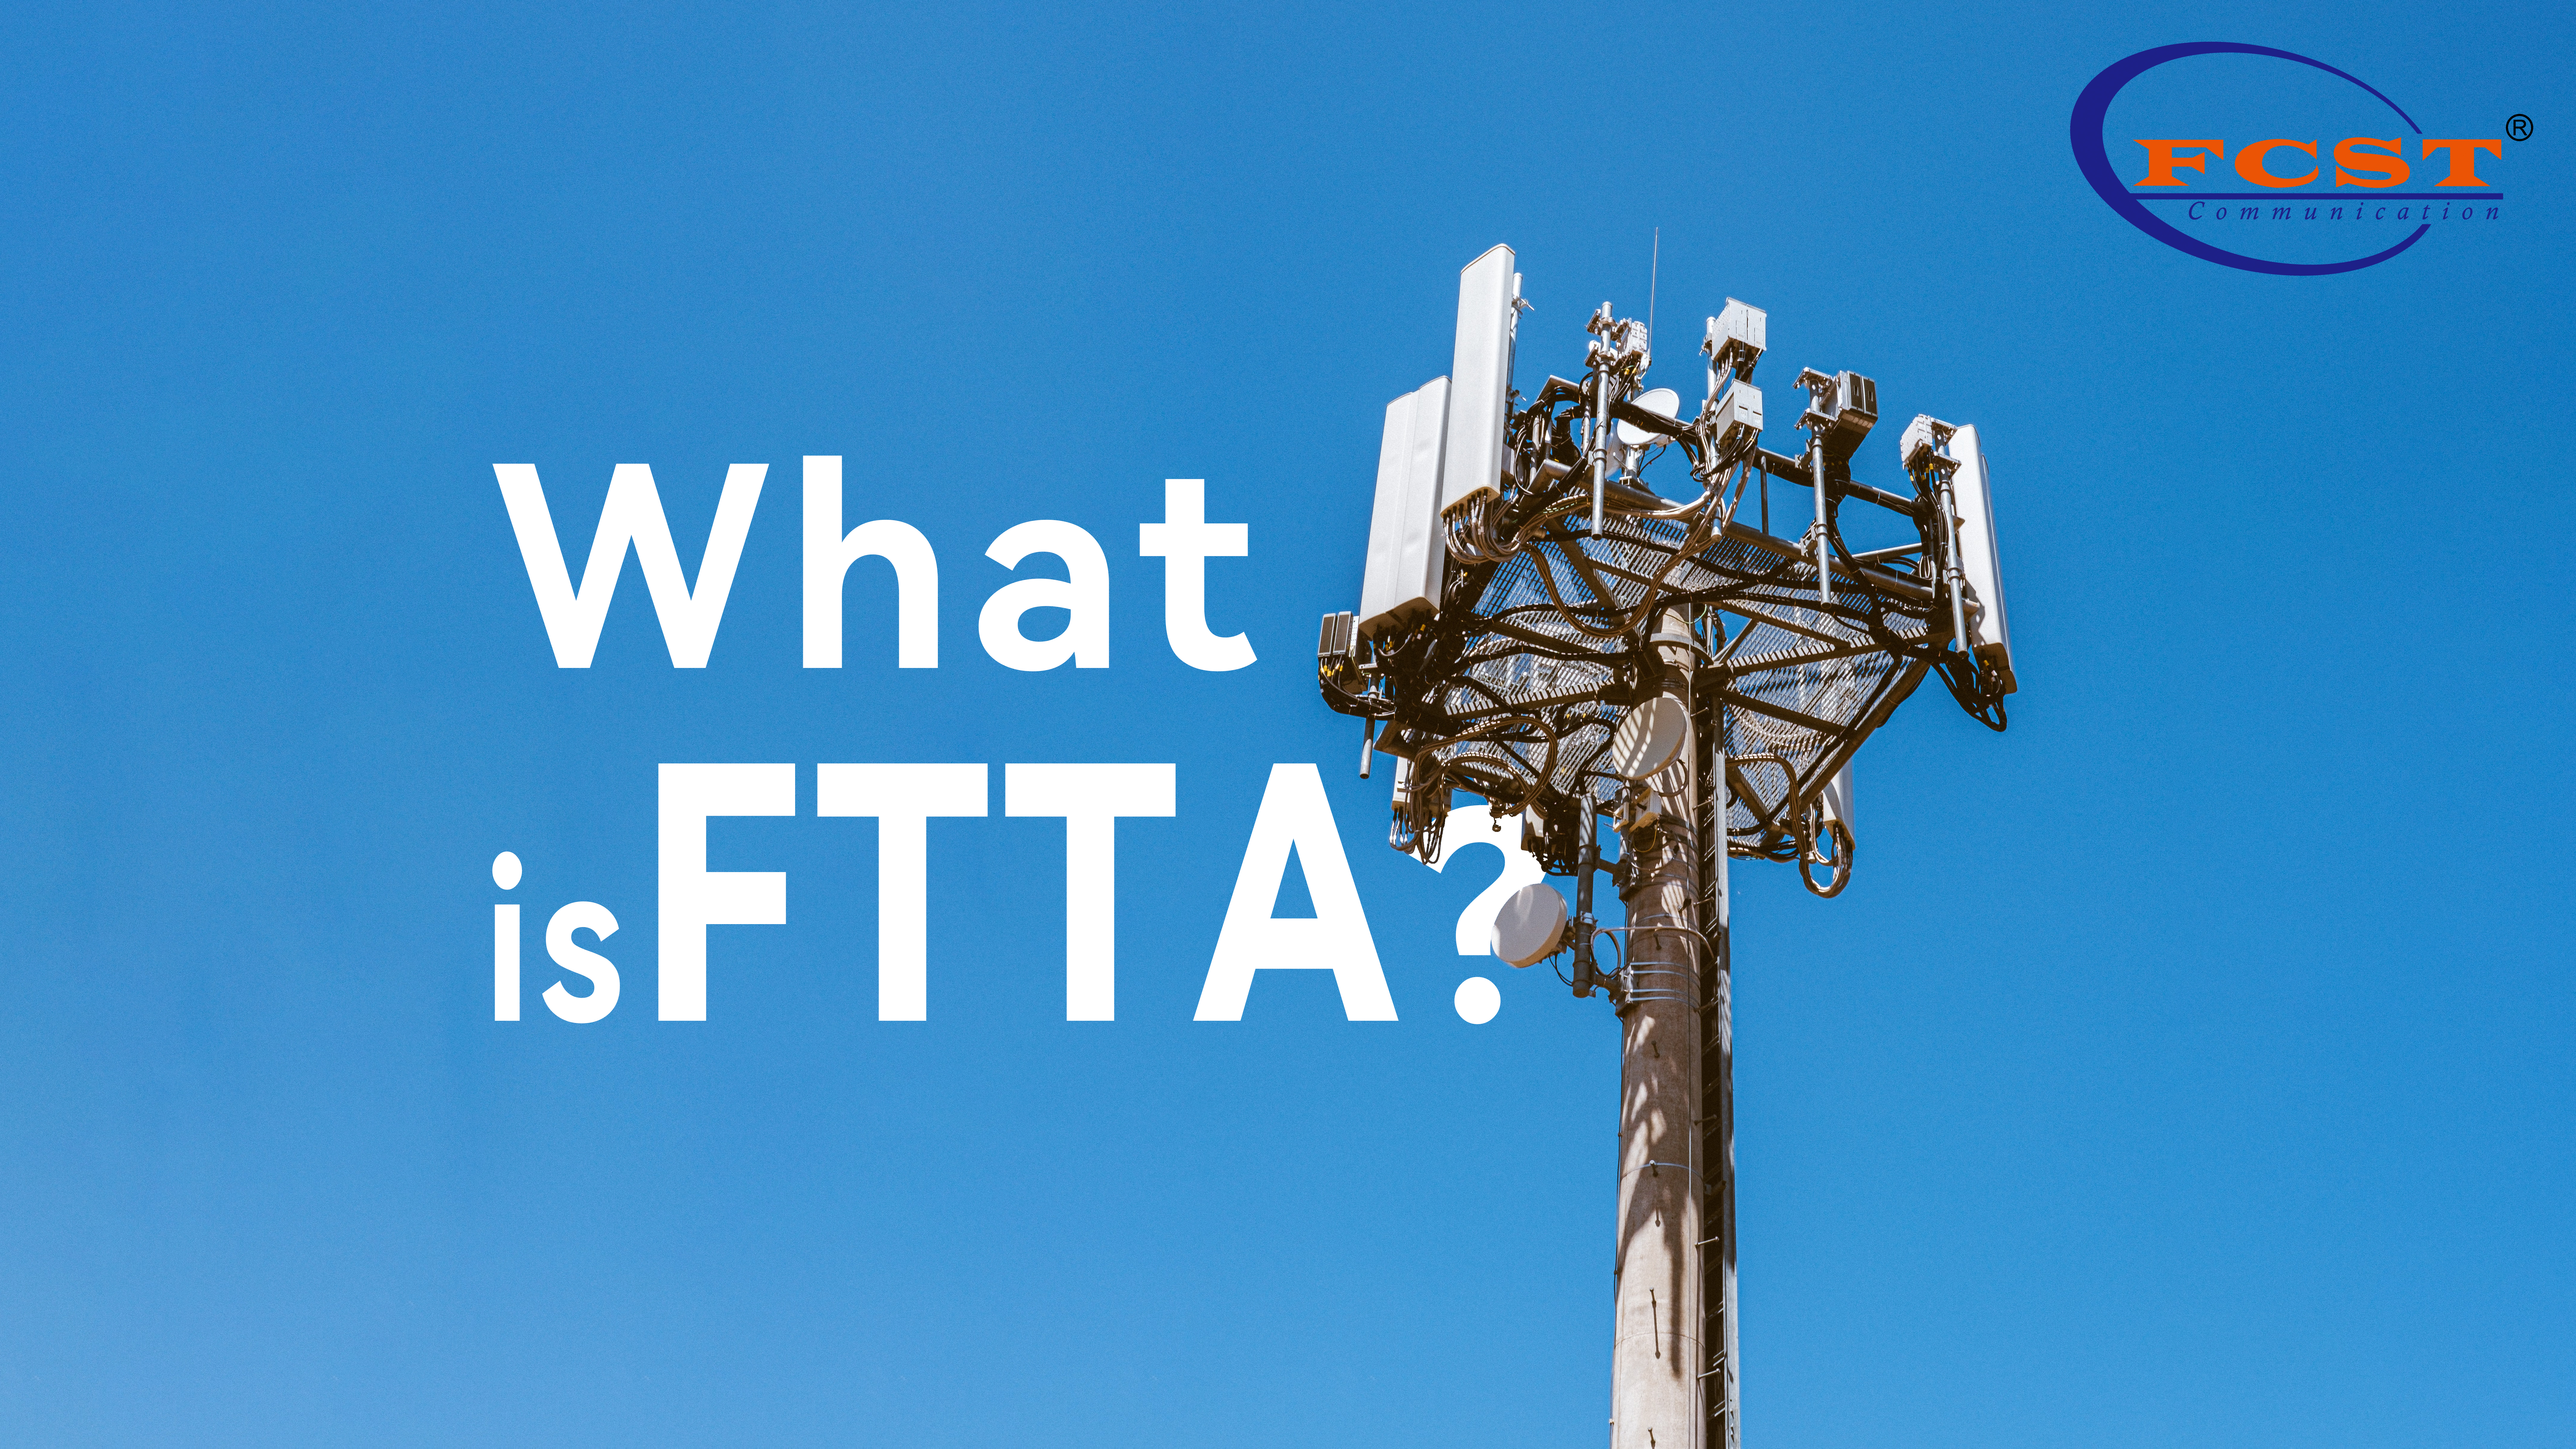 Qu'est-ce que FTTA?